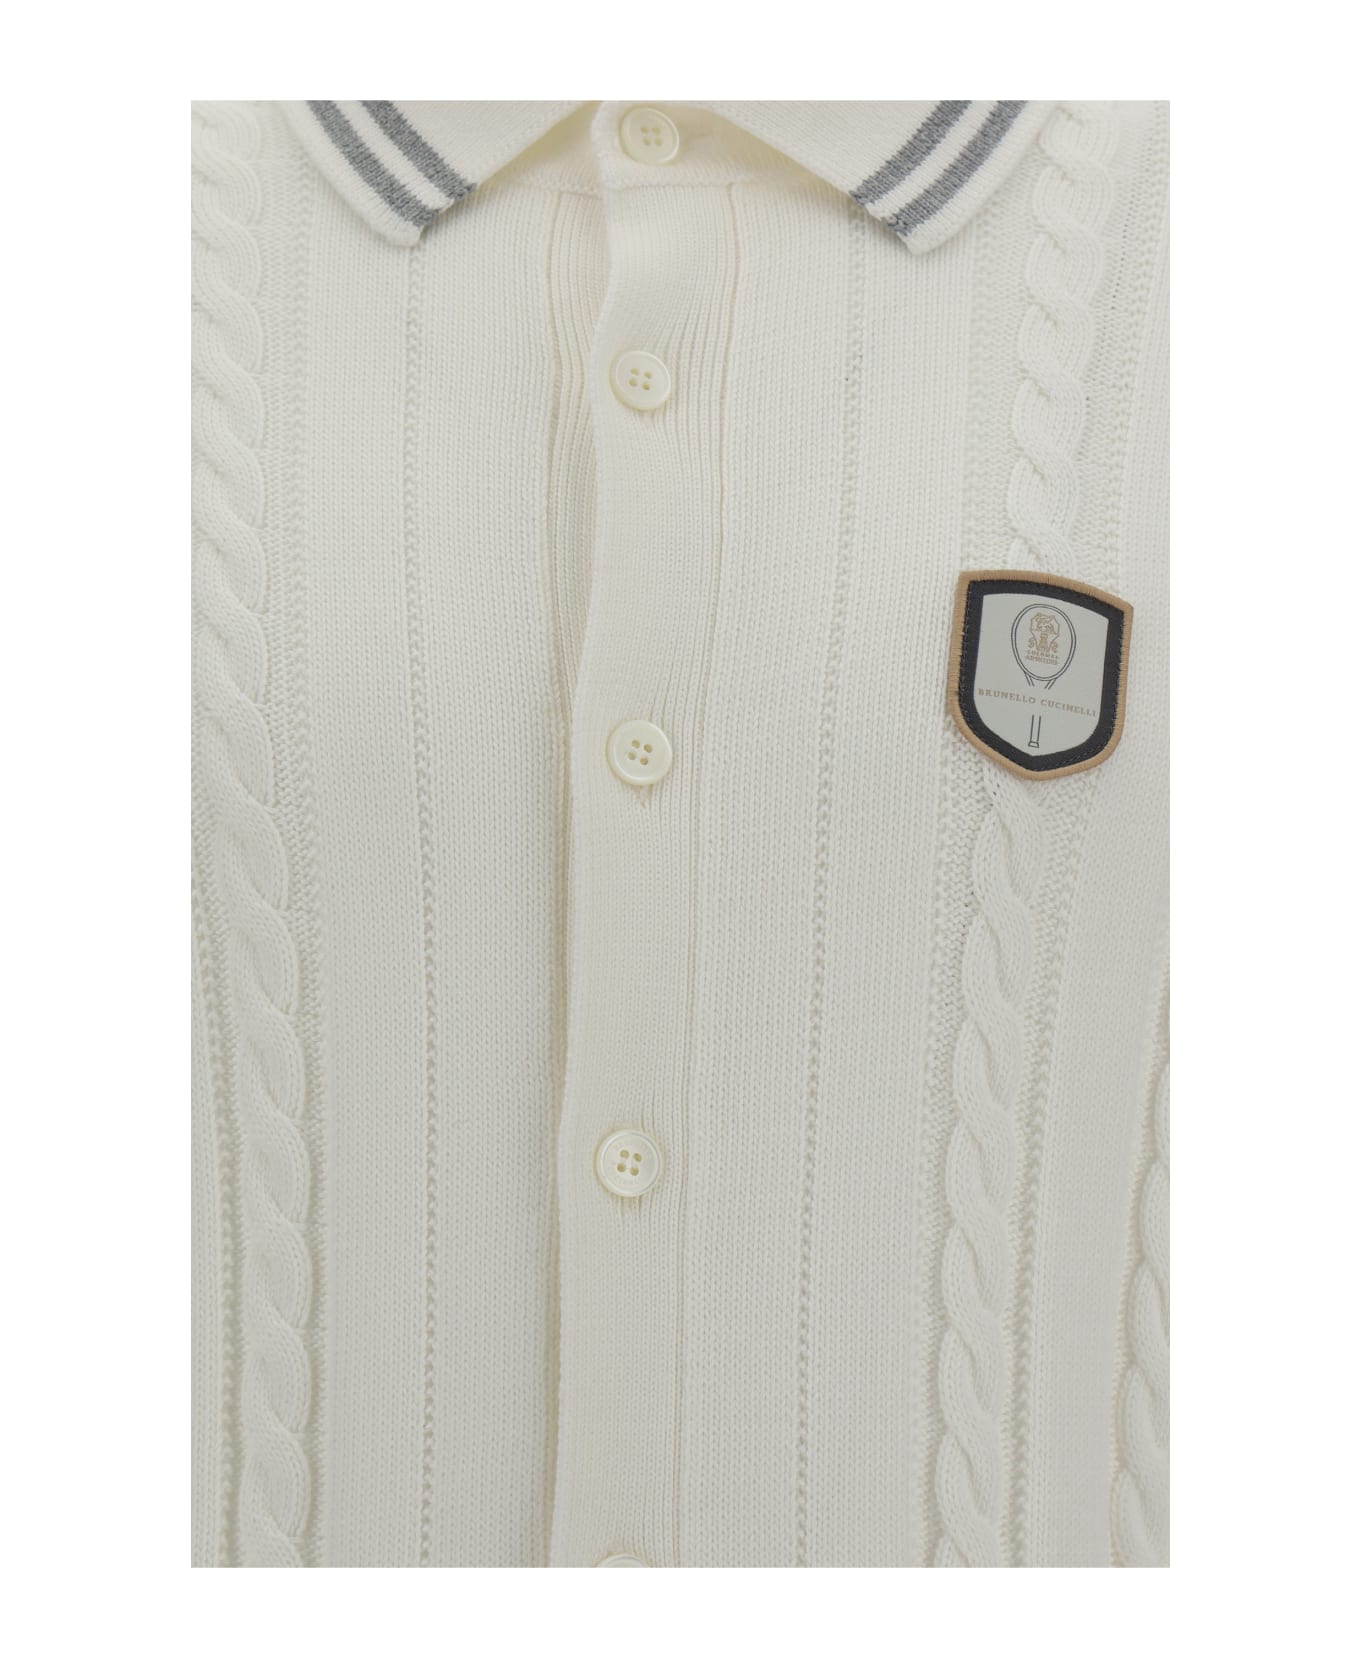 Brunello Cucinelli Polo Shirt - Panama+grigio Chiaro+bianco